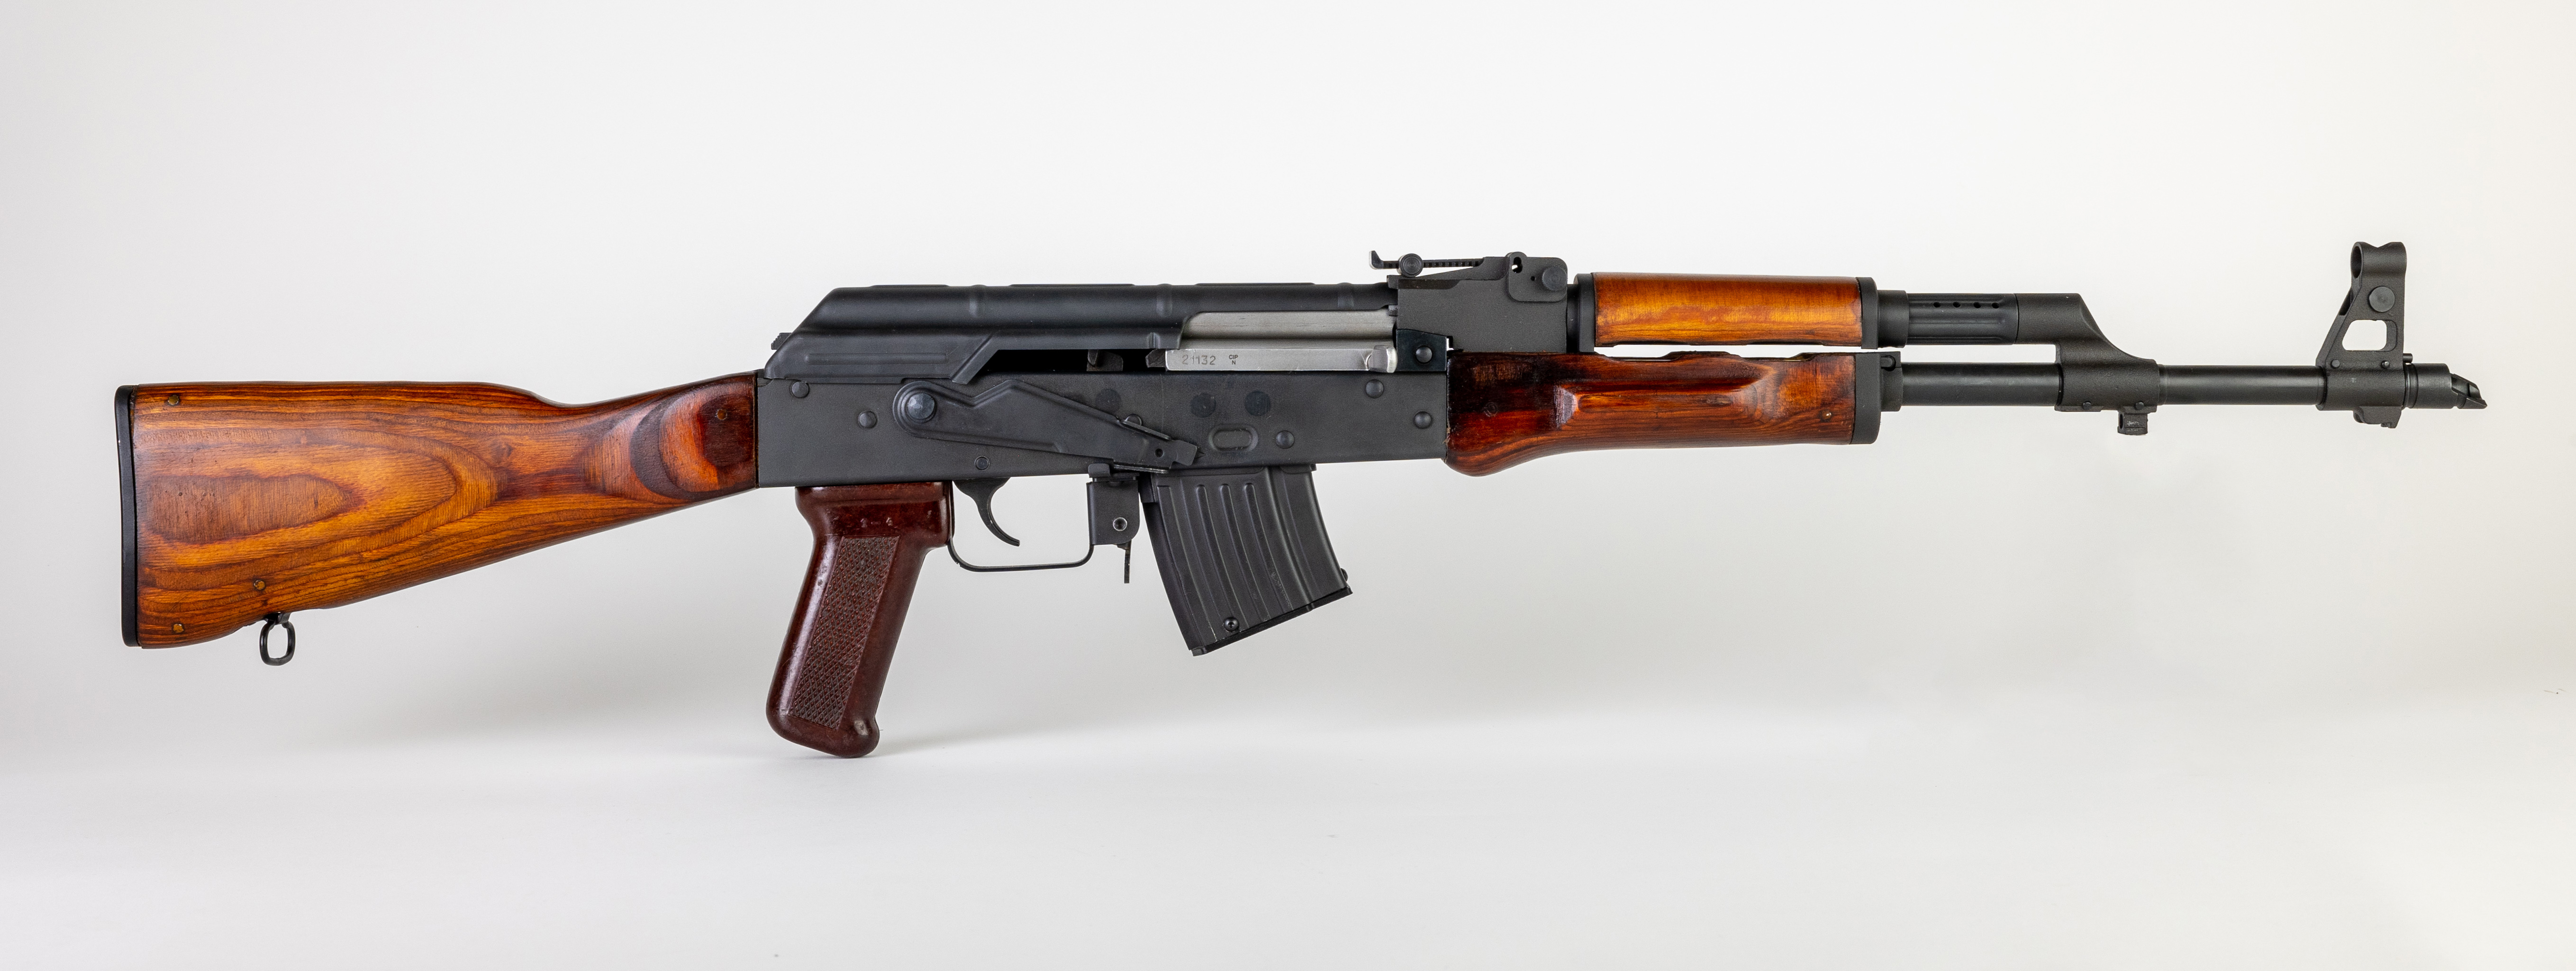 M17 (AK-47-style assault rifle)